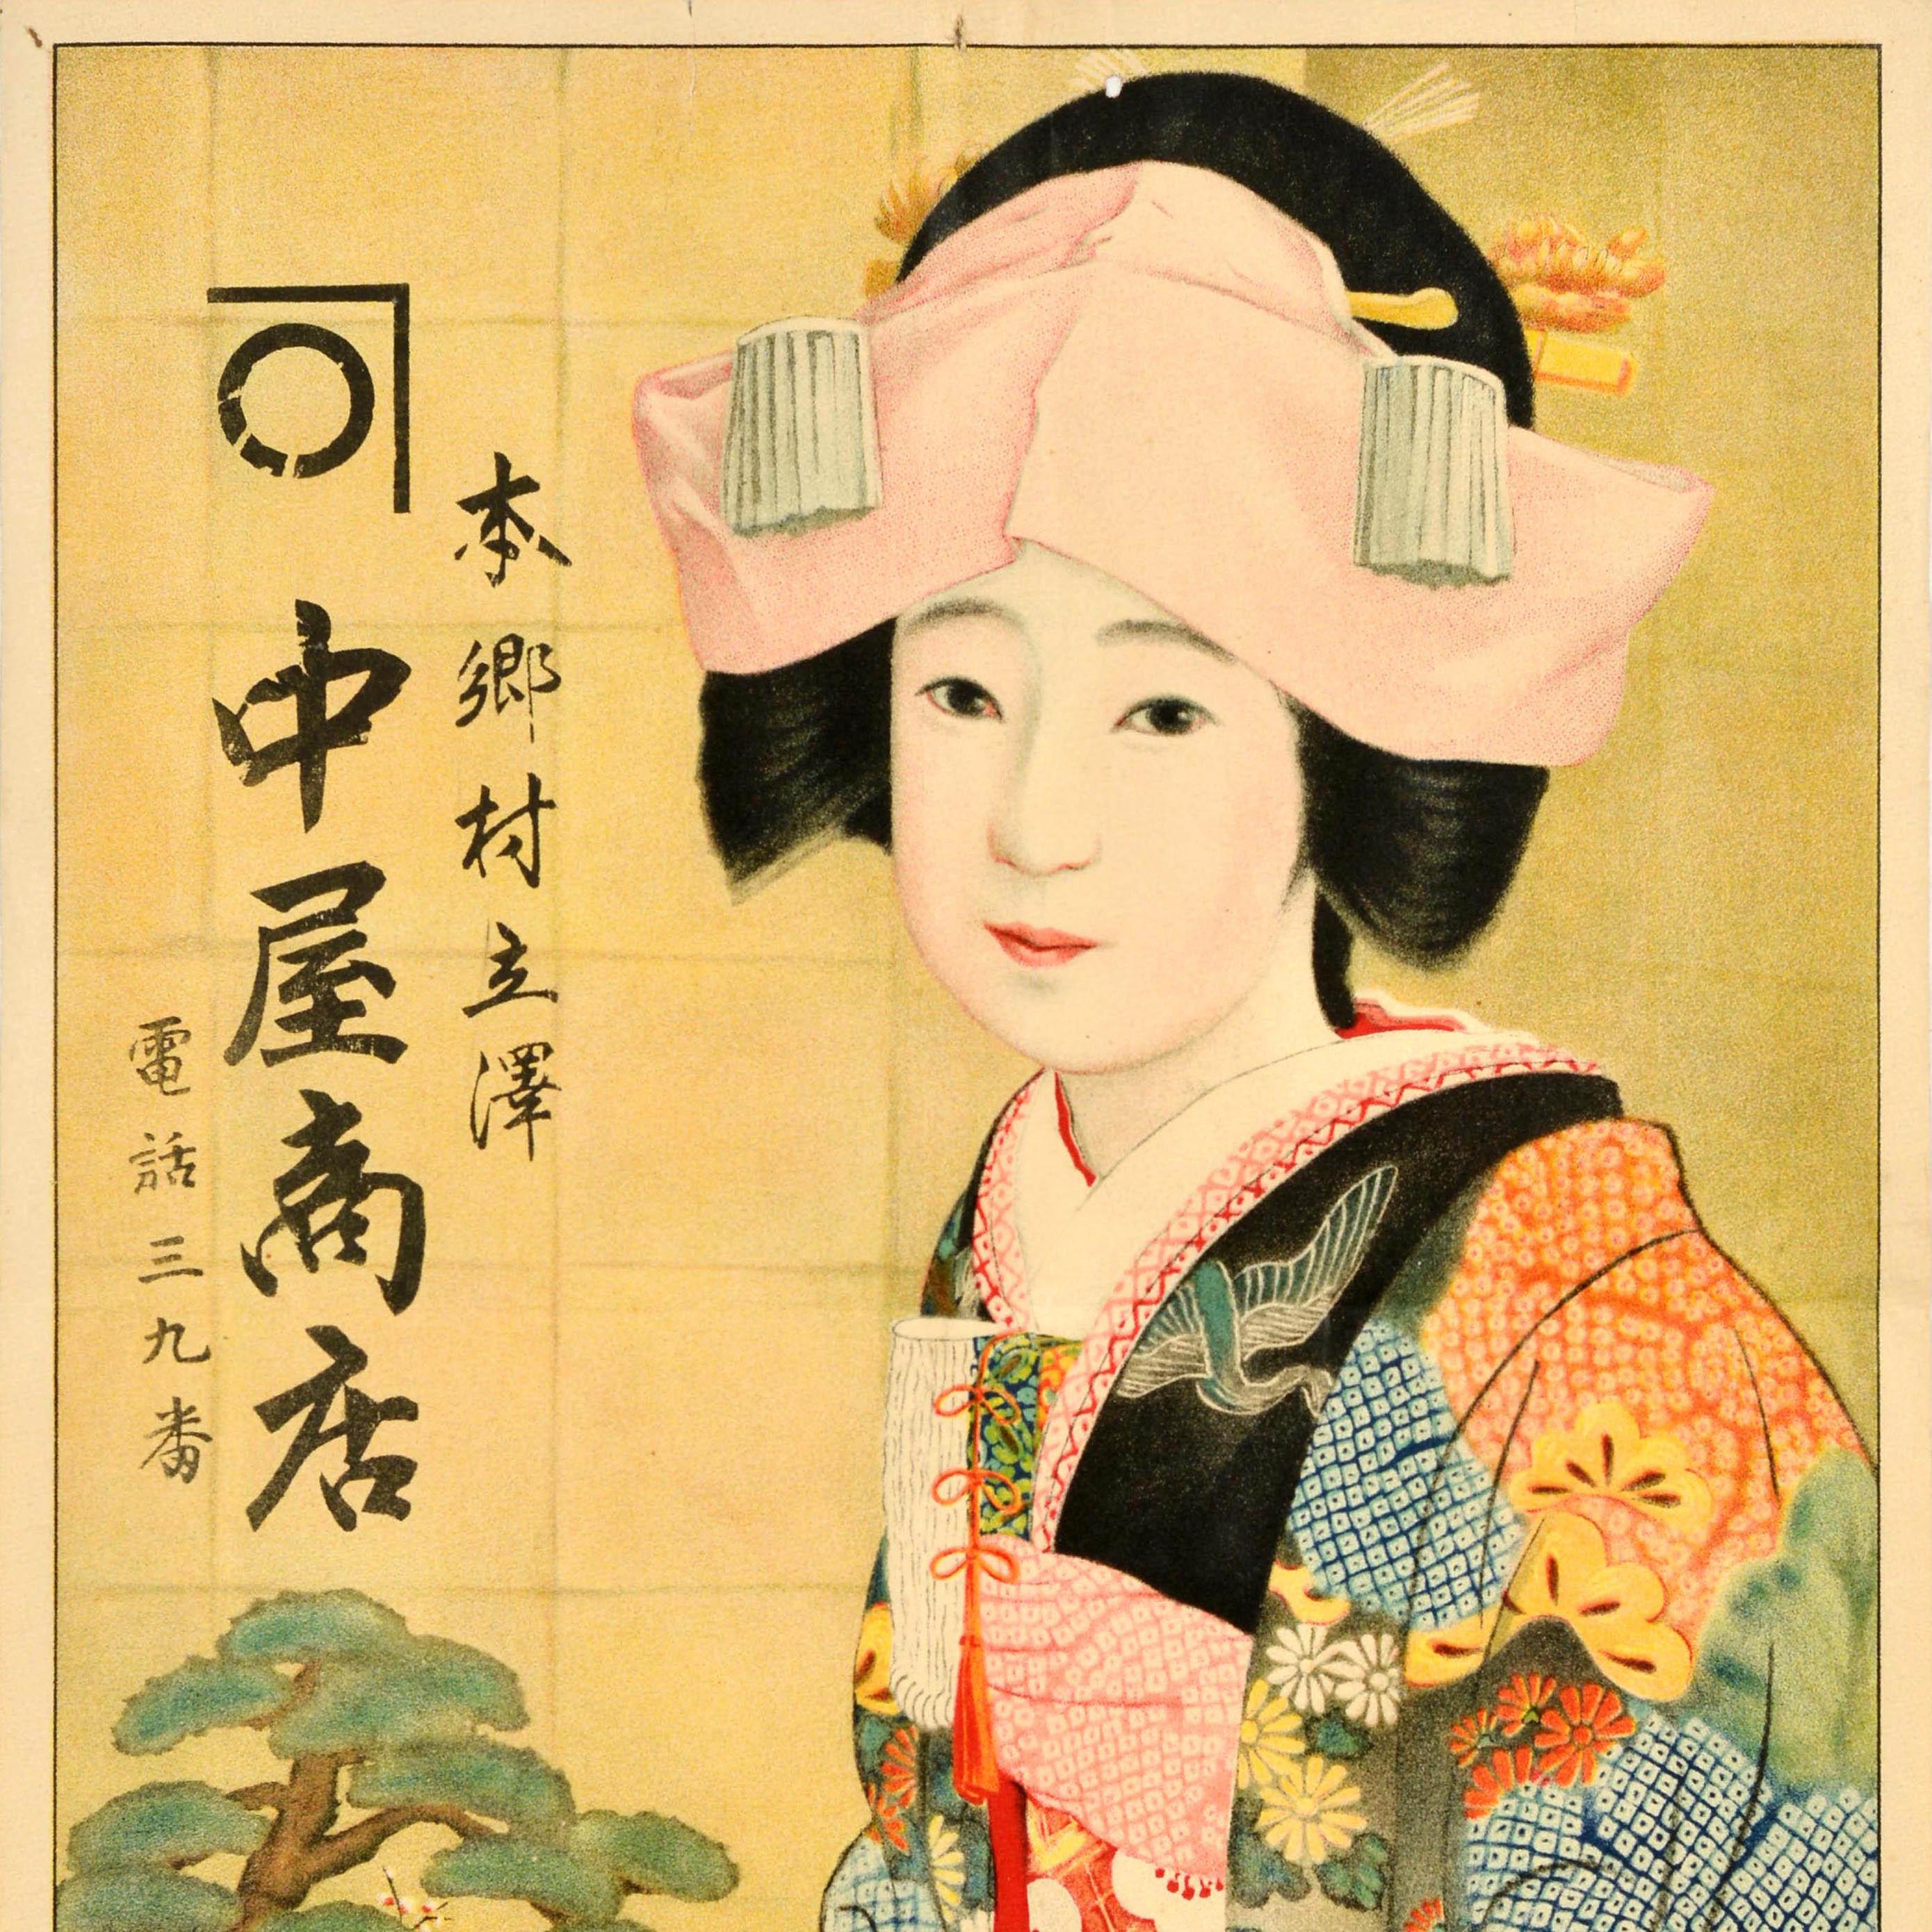 Affiche publicitaire vintage originale pour le magasin Hongo Village Tachisawa Kanakaya représentant une dame japonaise portant une coiffe traditionnelle et un kimono à motifs floraux, tenant une tasse de thé. Le texte est écrit en lettres noires